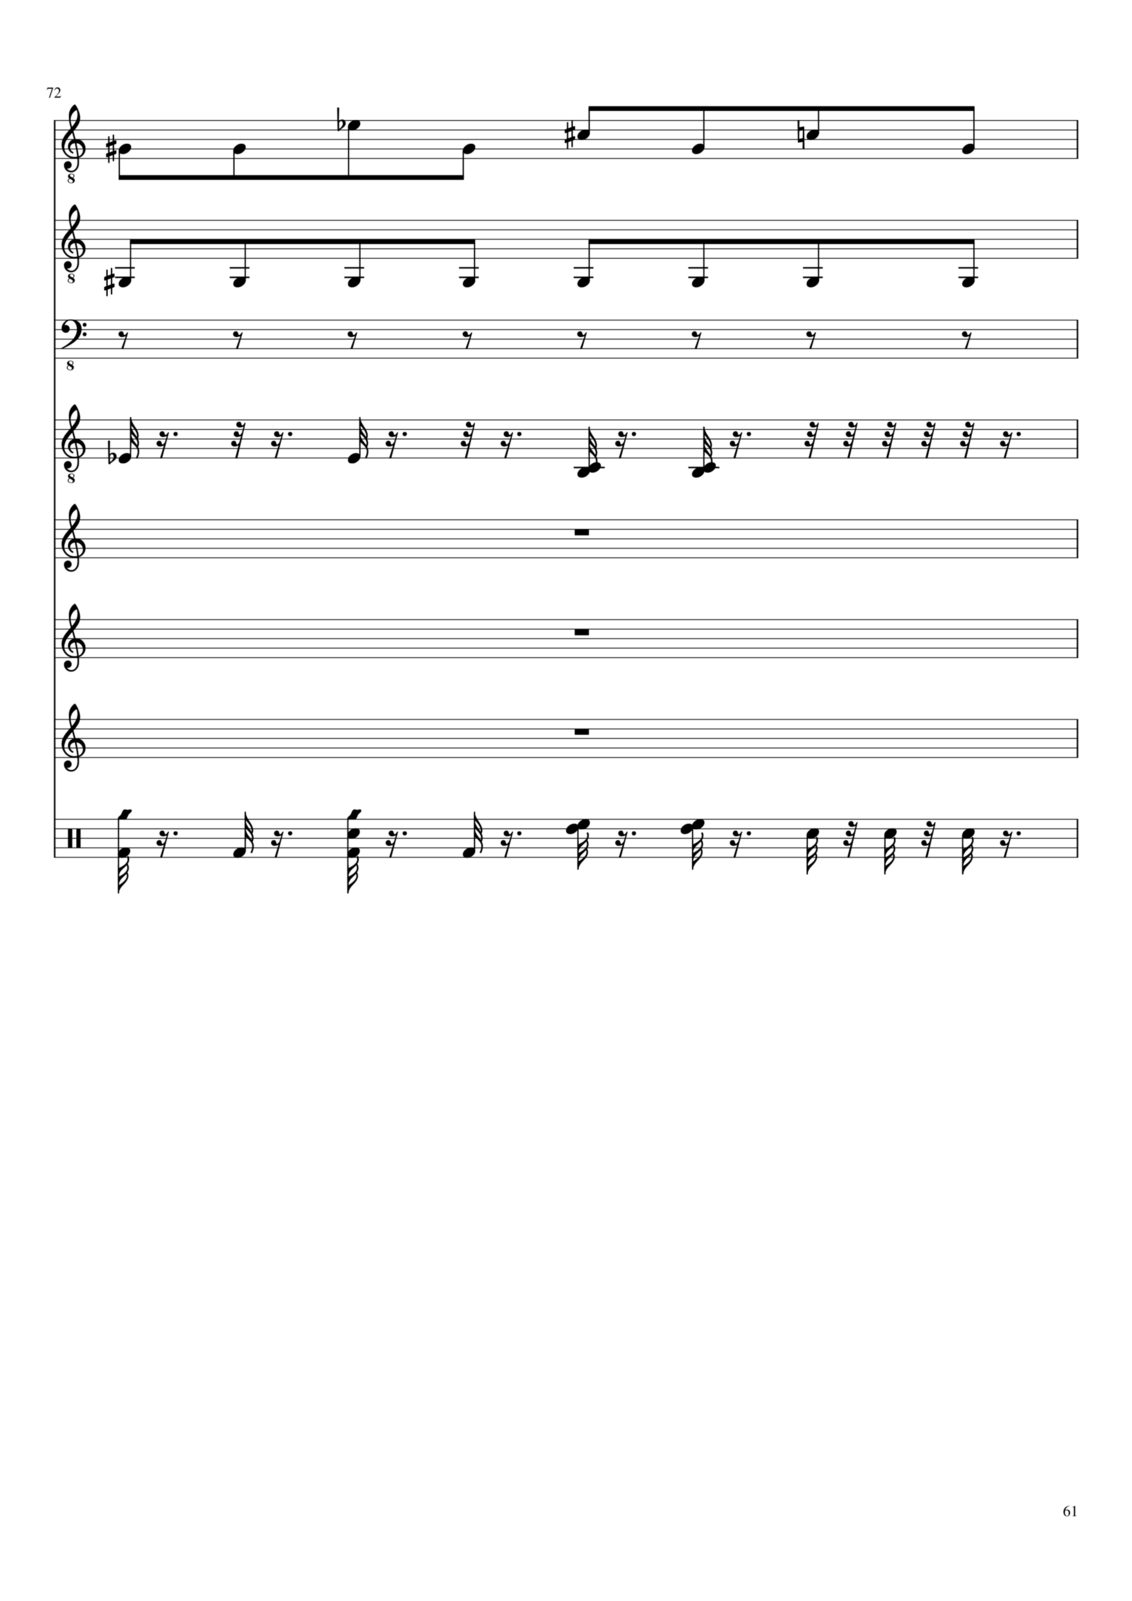 Vechnaya prizrachnaya vstrechnaya slide, Image 1